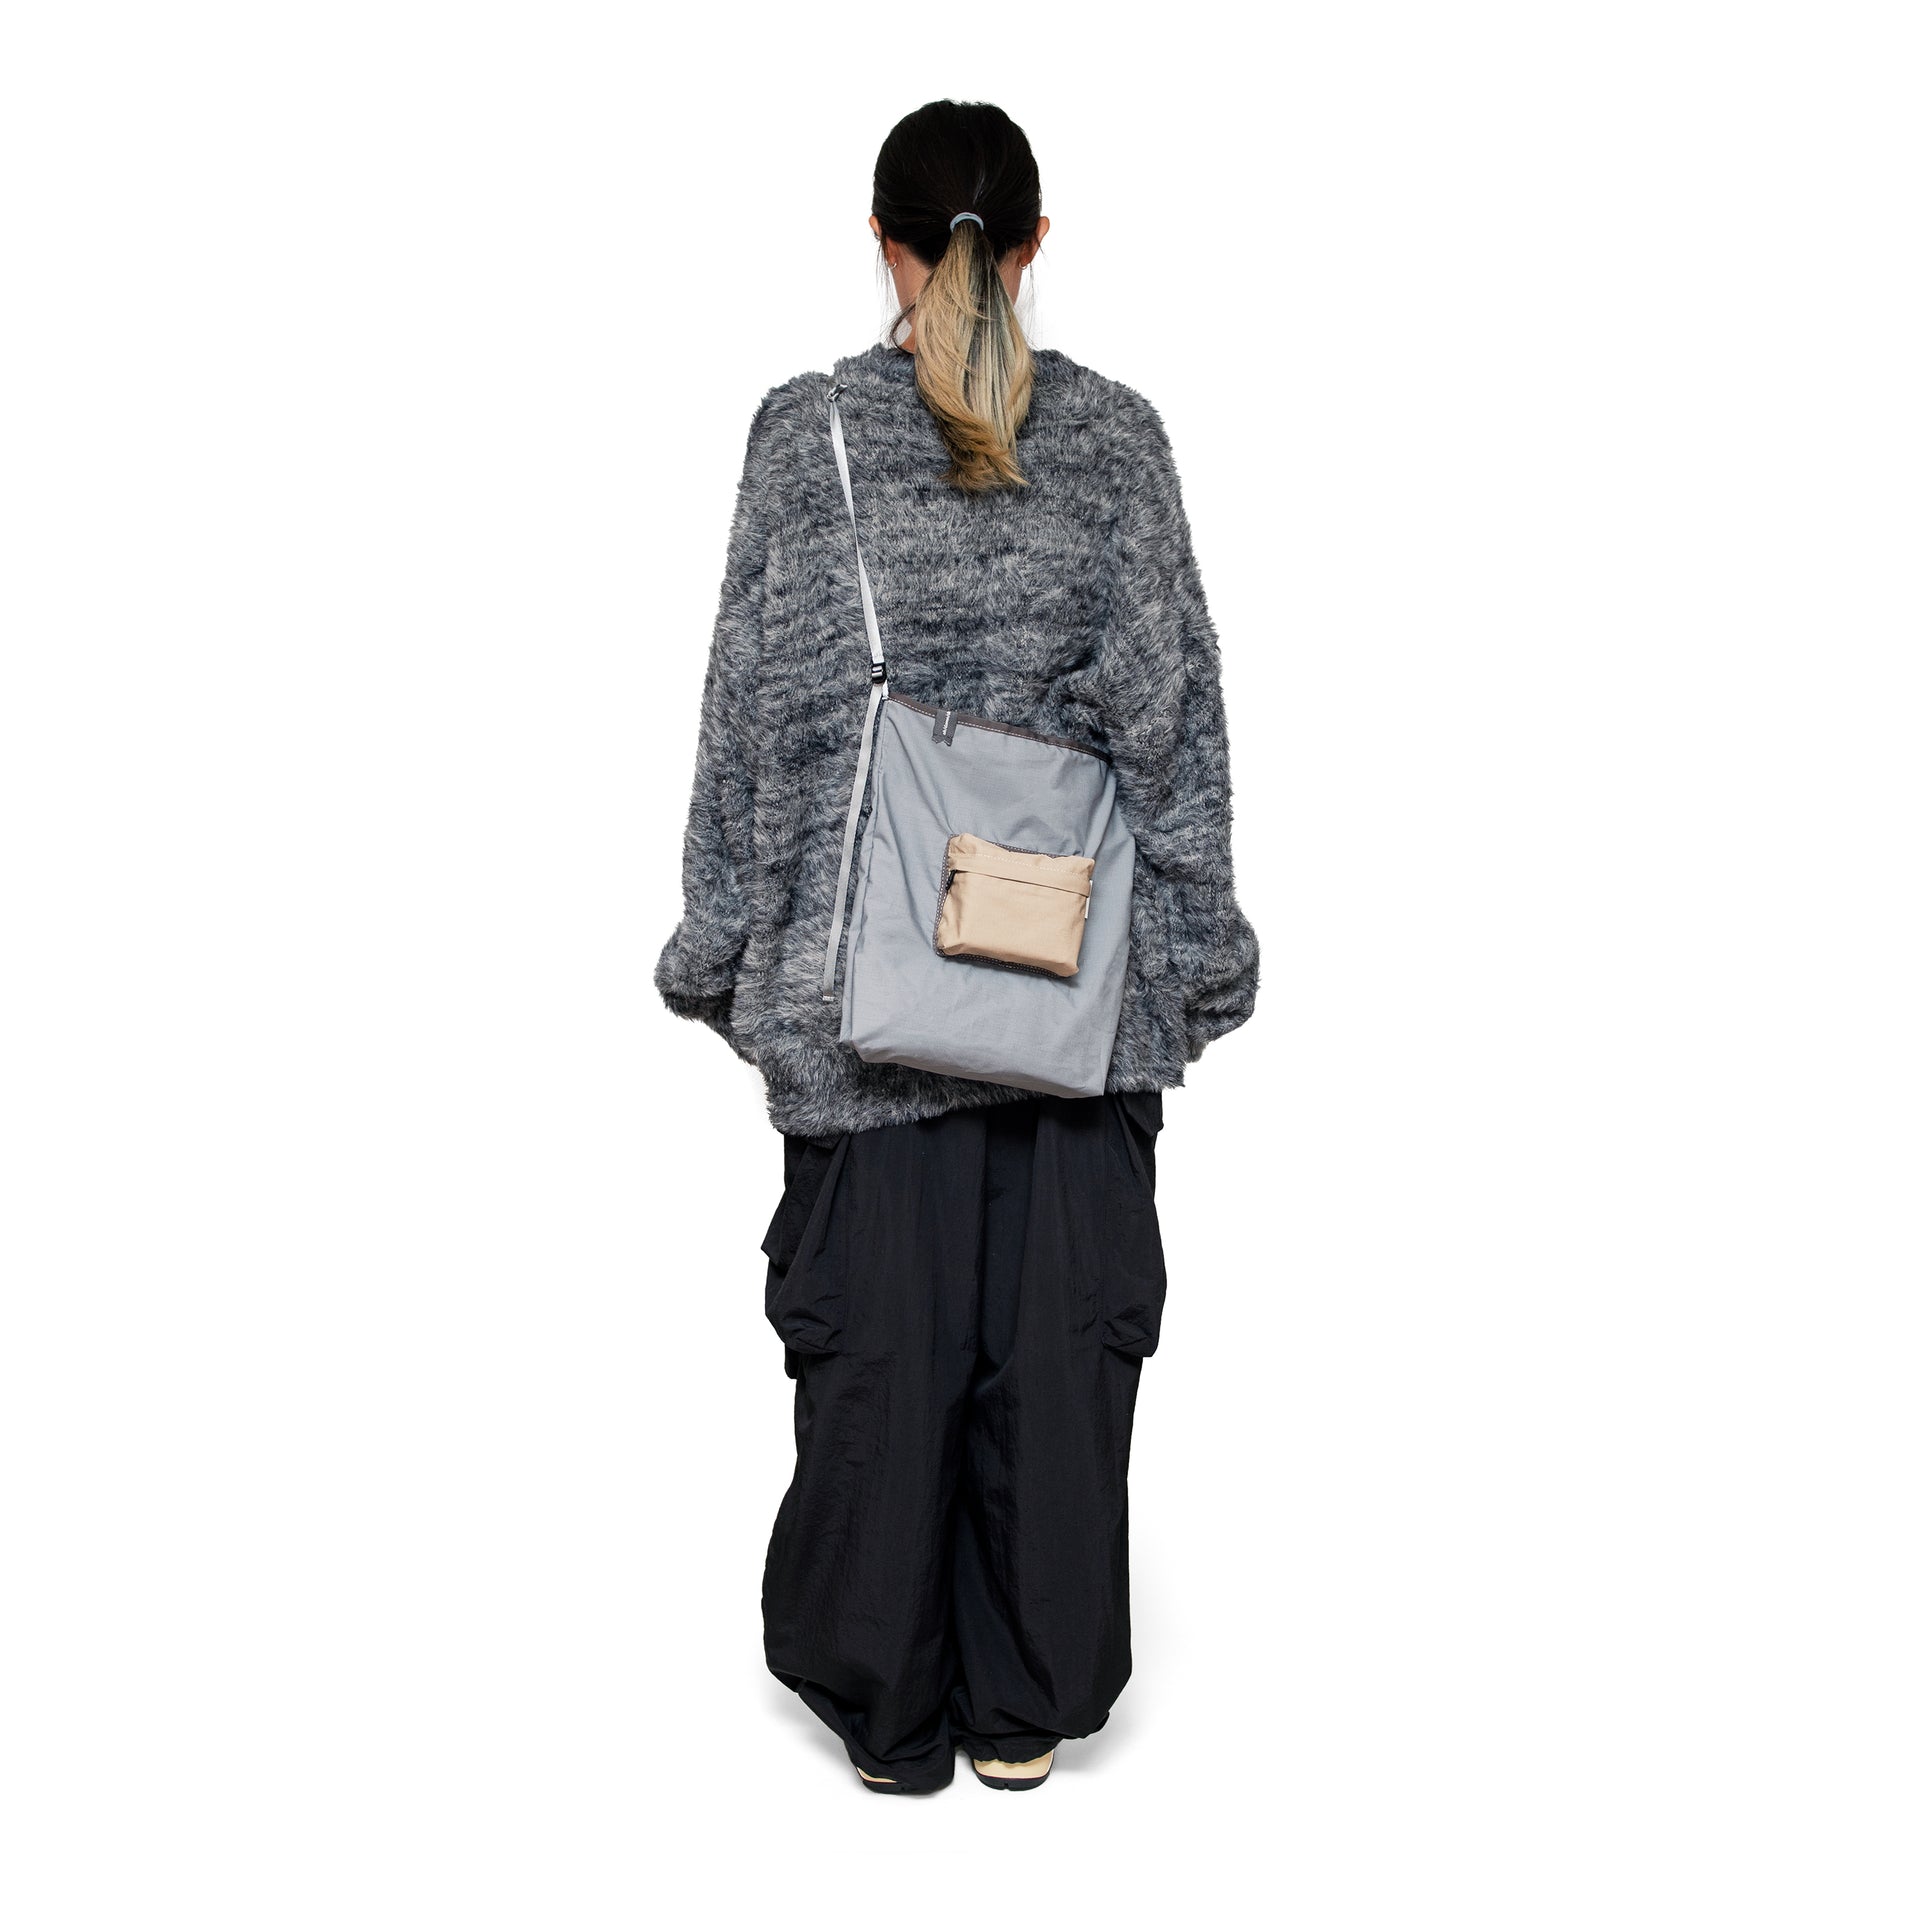 Teflon™ packable shoulder bag in stone